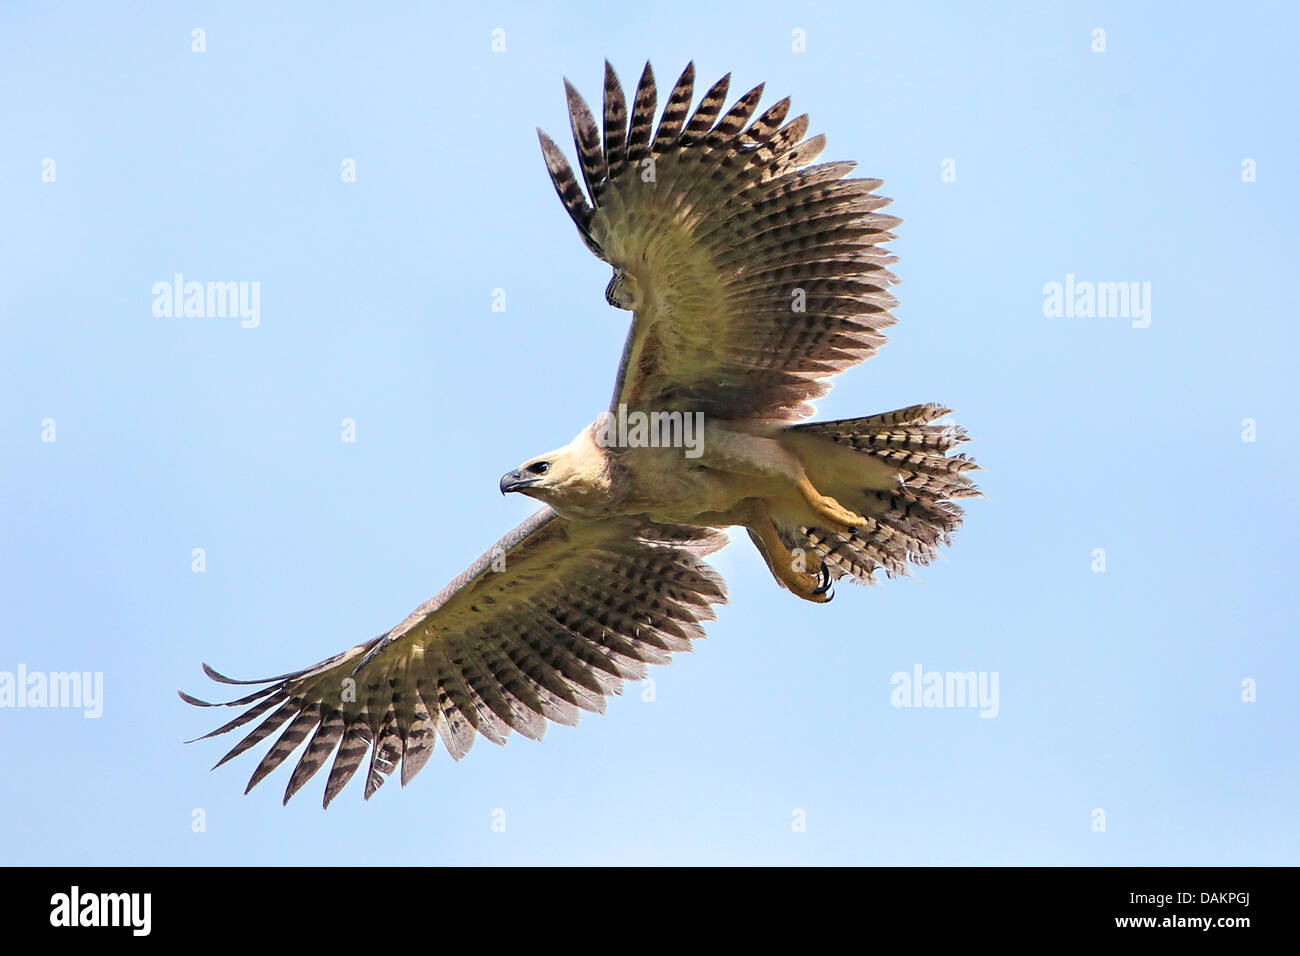 Most Deadly Eagles Attacks 2019 Golden Eagle Vs Goat Hawk Vs Rattlesnake Eagle Vs Monkey